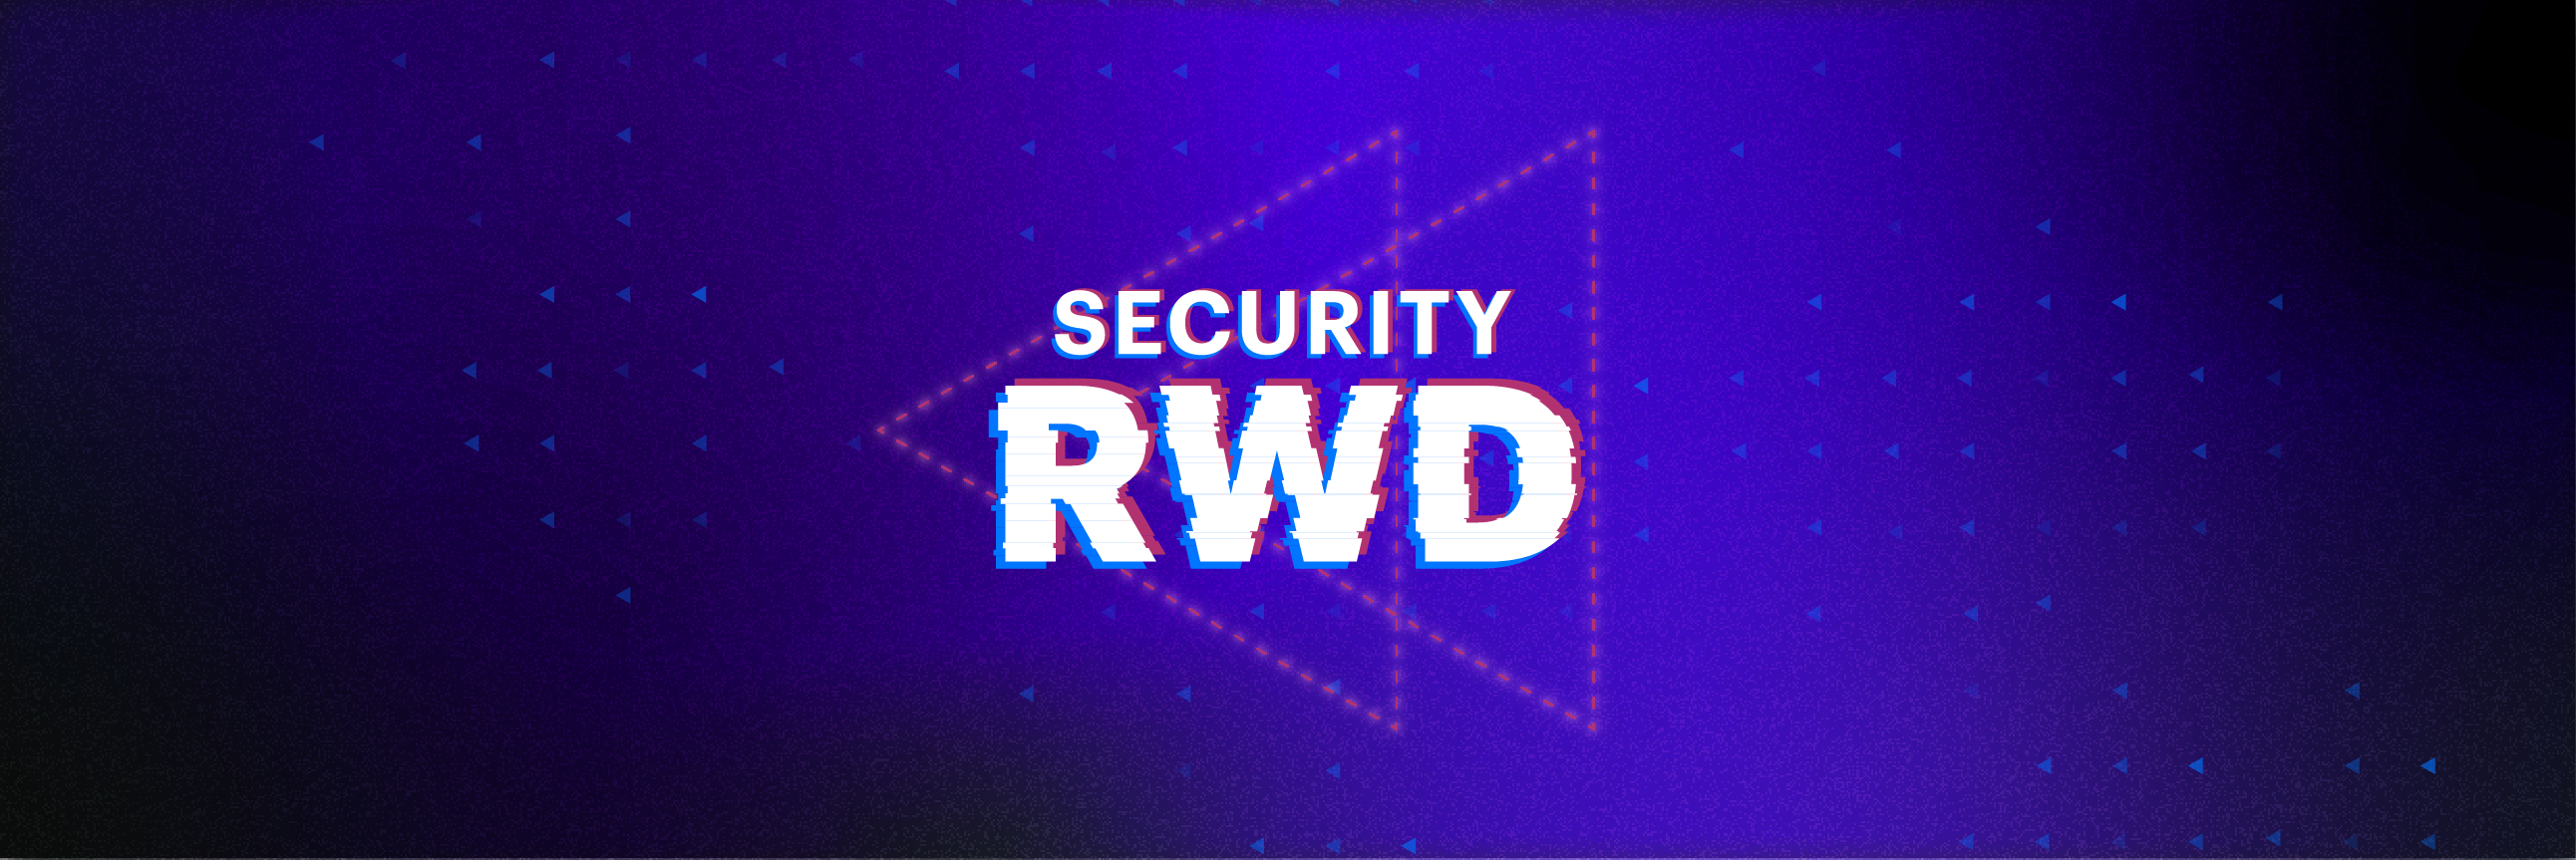 SecurityRWD - Introduction to AWS Lambda